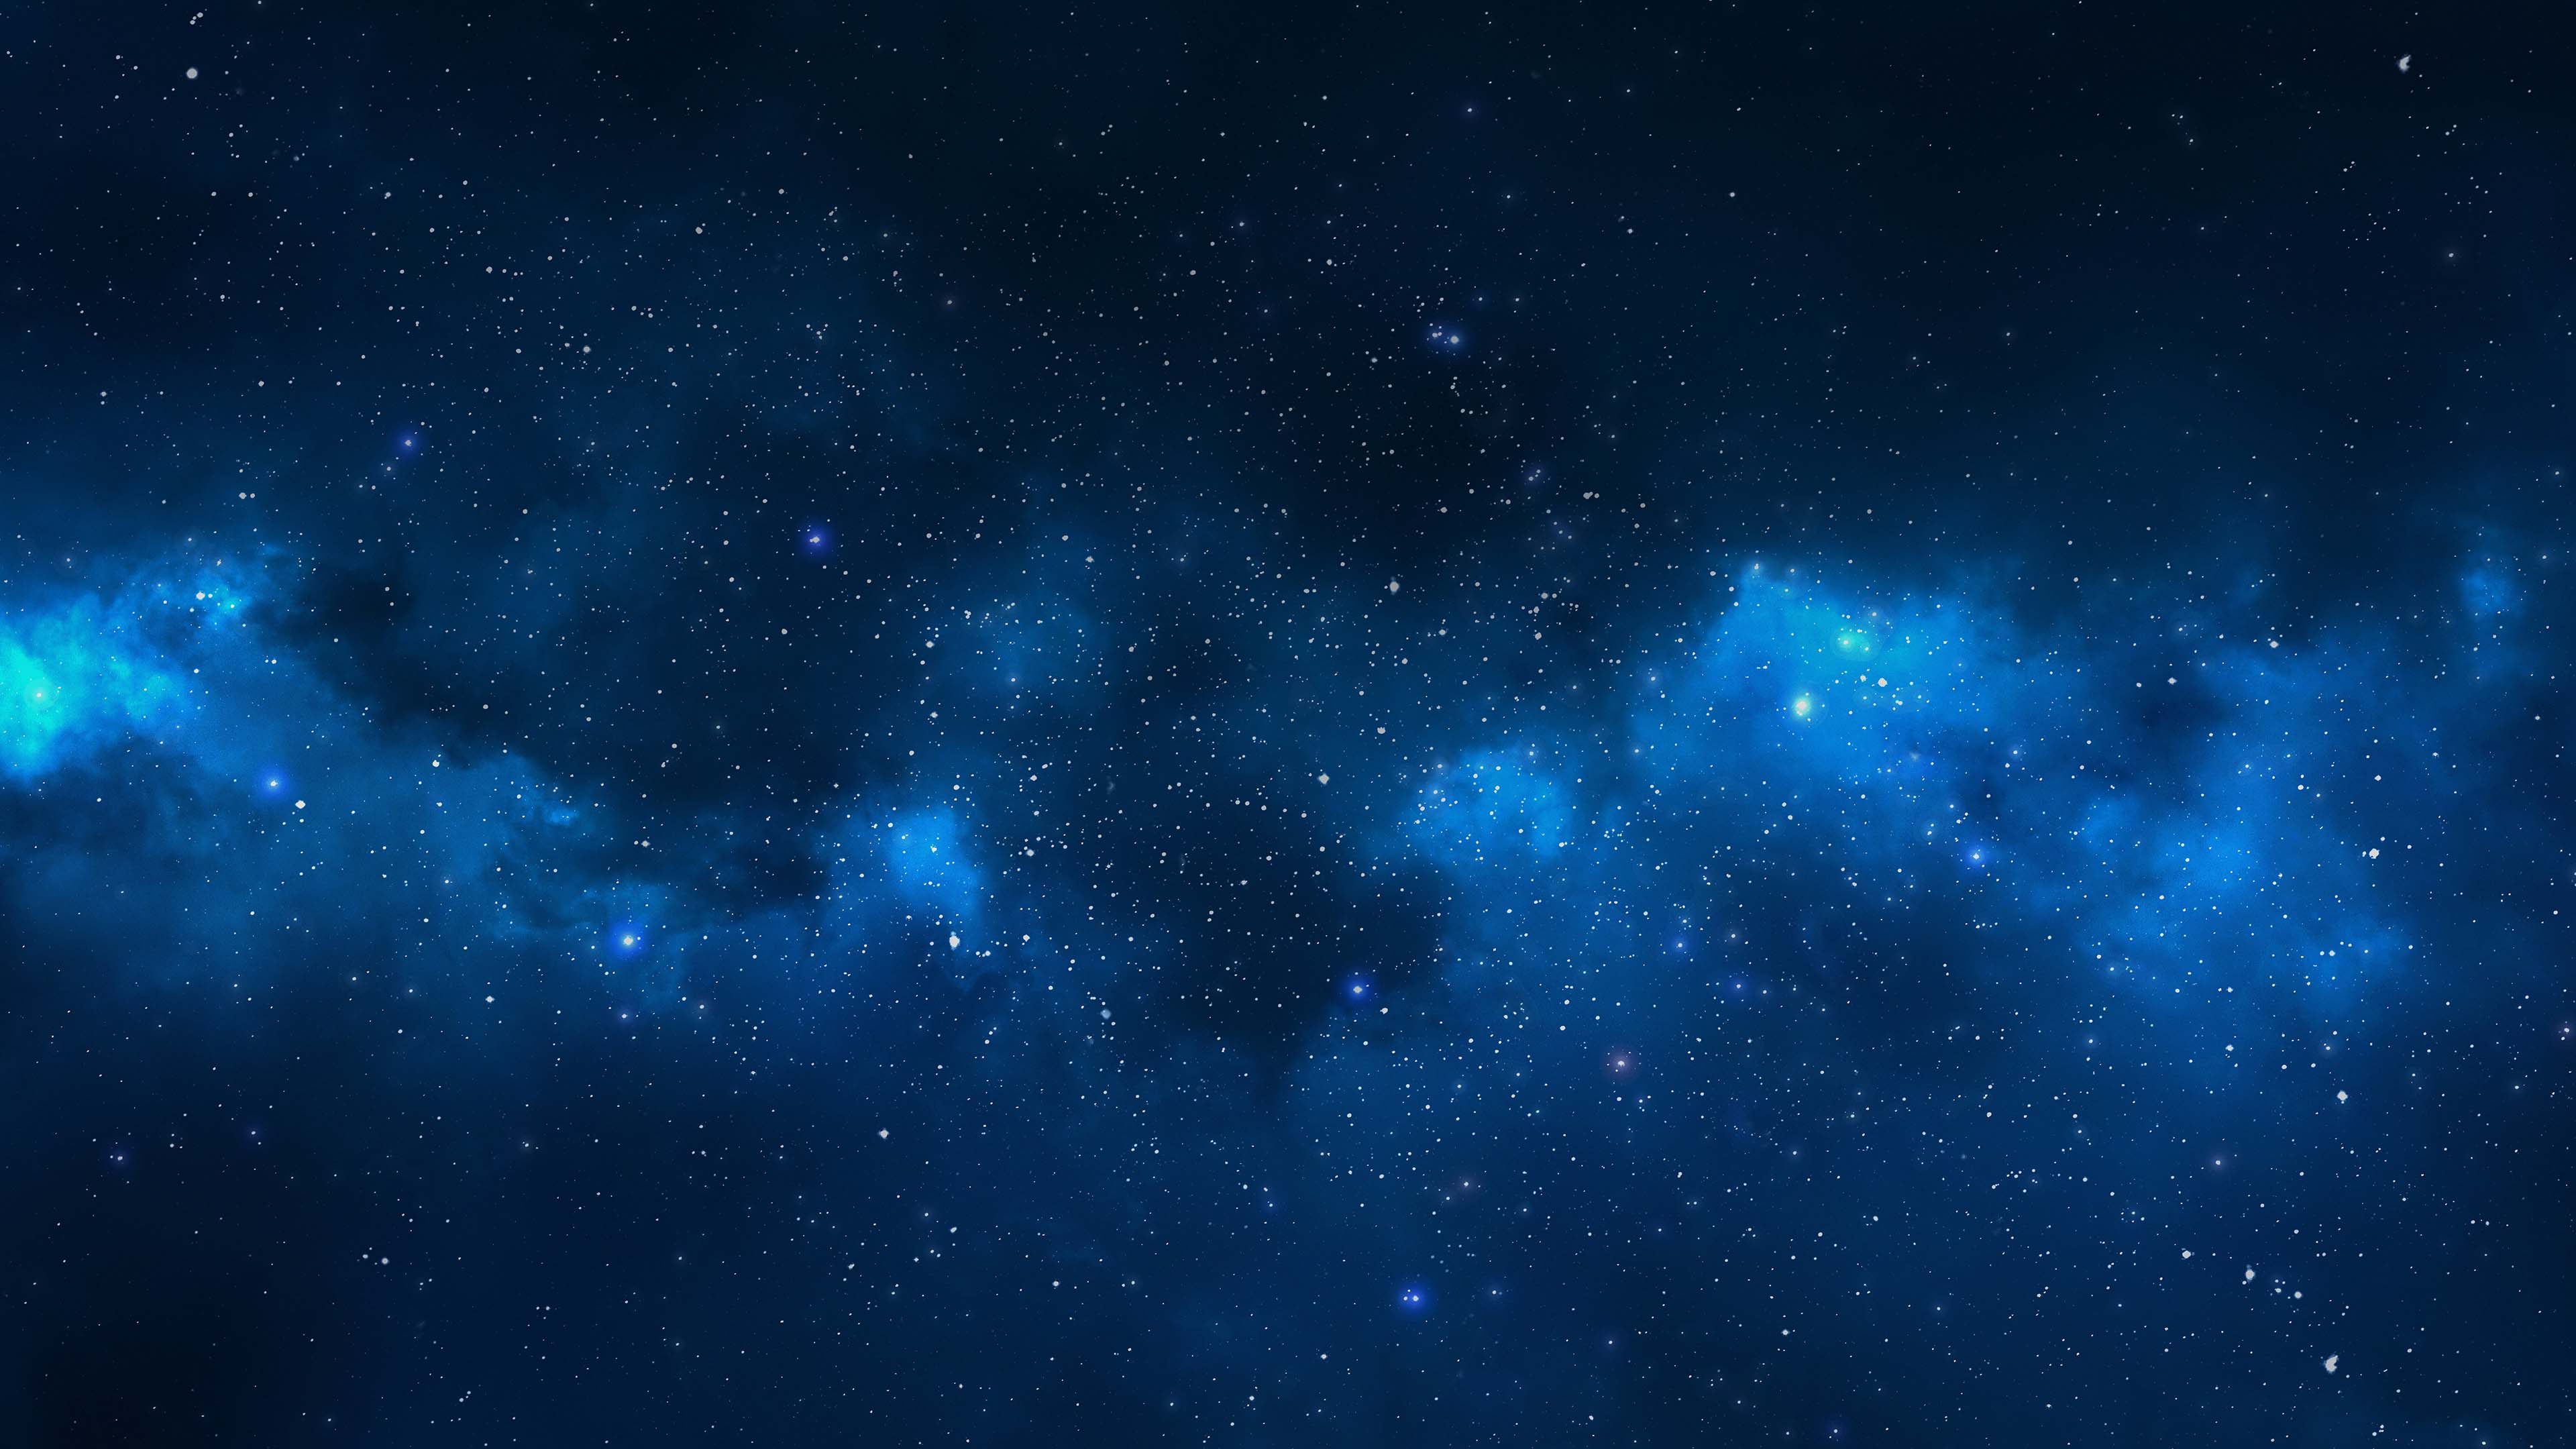 Hình nền Galaxy HD sẽ đưa bạn vào một không gian hoàn toàn khác biệt với đầy những vì sao lấp lánh và màu sắc tuyệt đẹp. Hãy tận hưởng cảm giác tràn ngập sự kì diệu khi đắm mình trong không gian bao la và đầy cảm hứng.